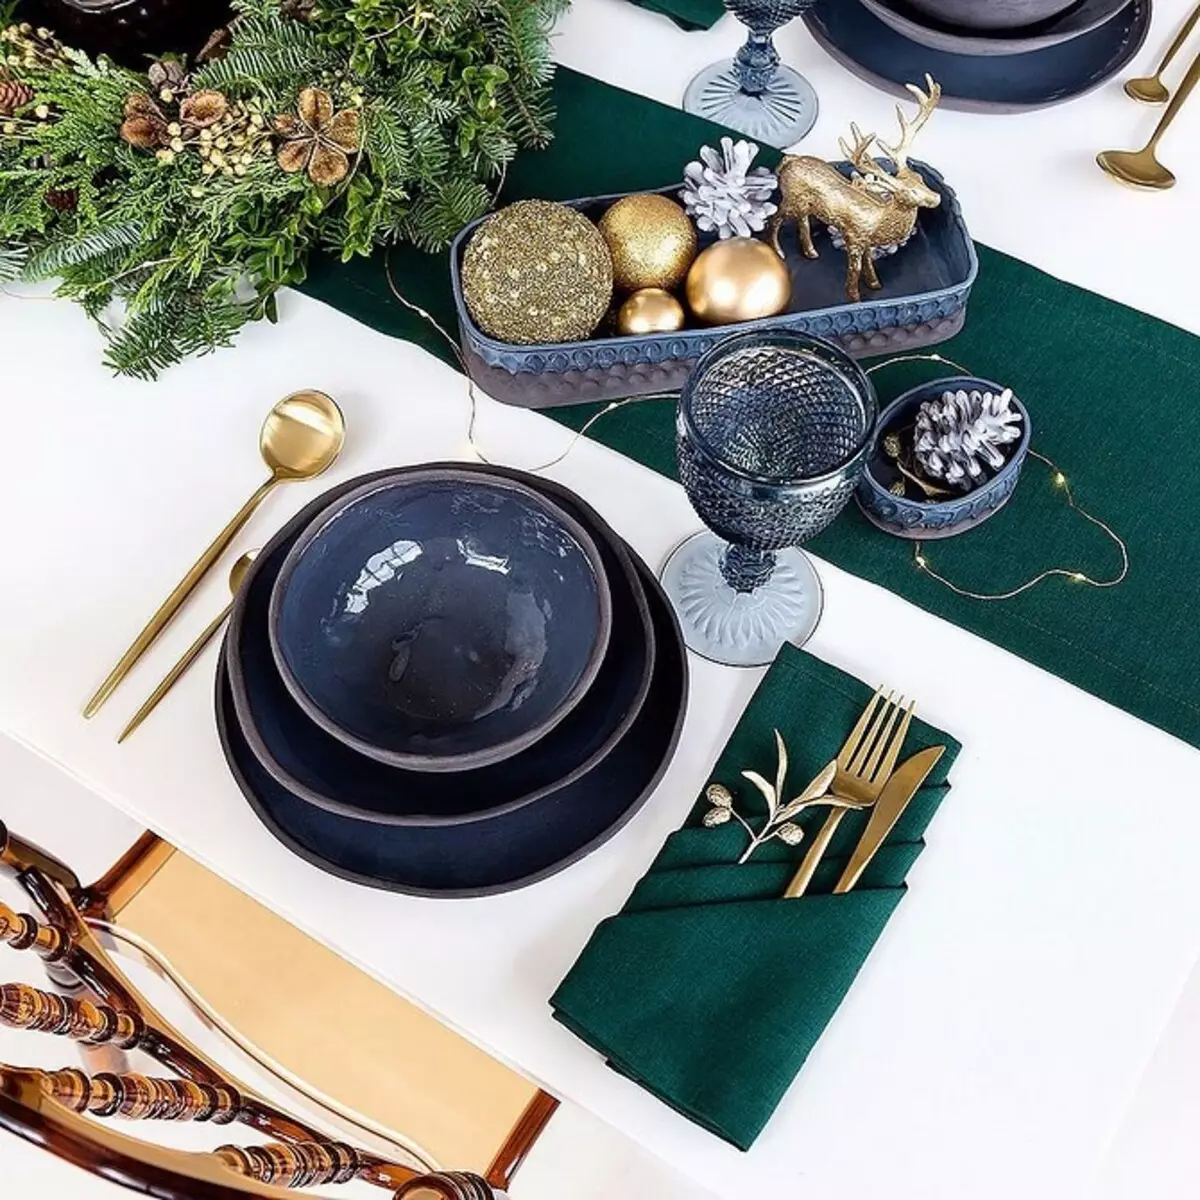 Quins tovallons bellament plegs per a una taula festiva: 11 maneres d'impressionar als vostres convidats 9623_14